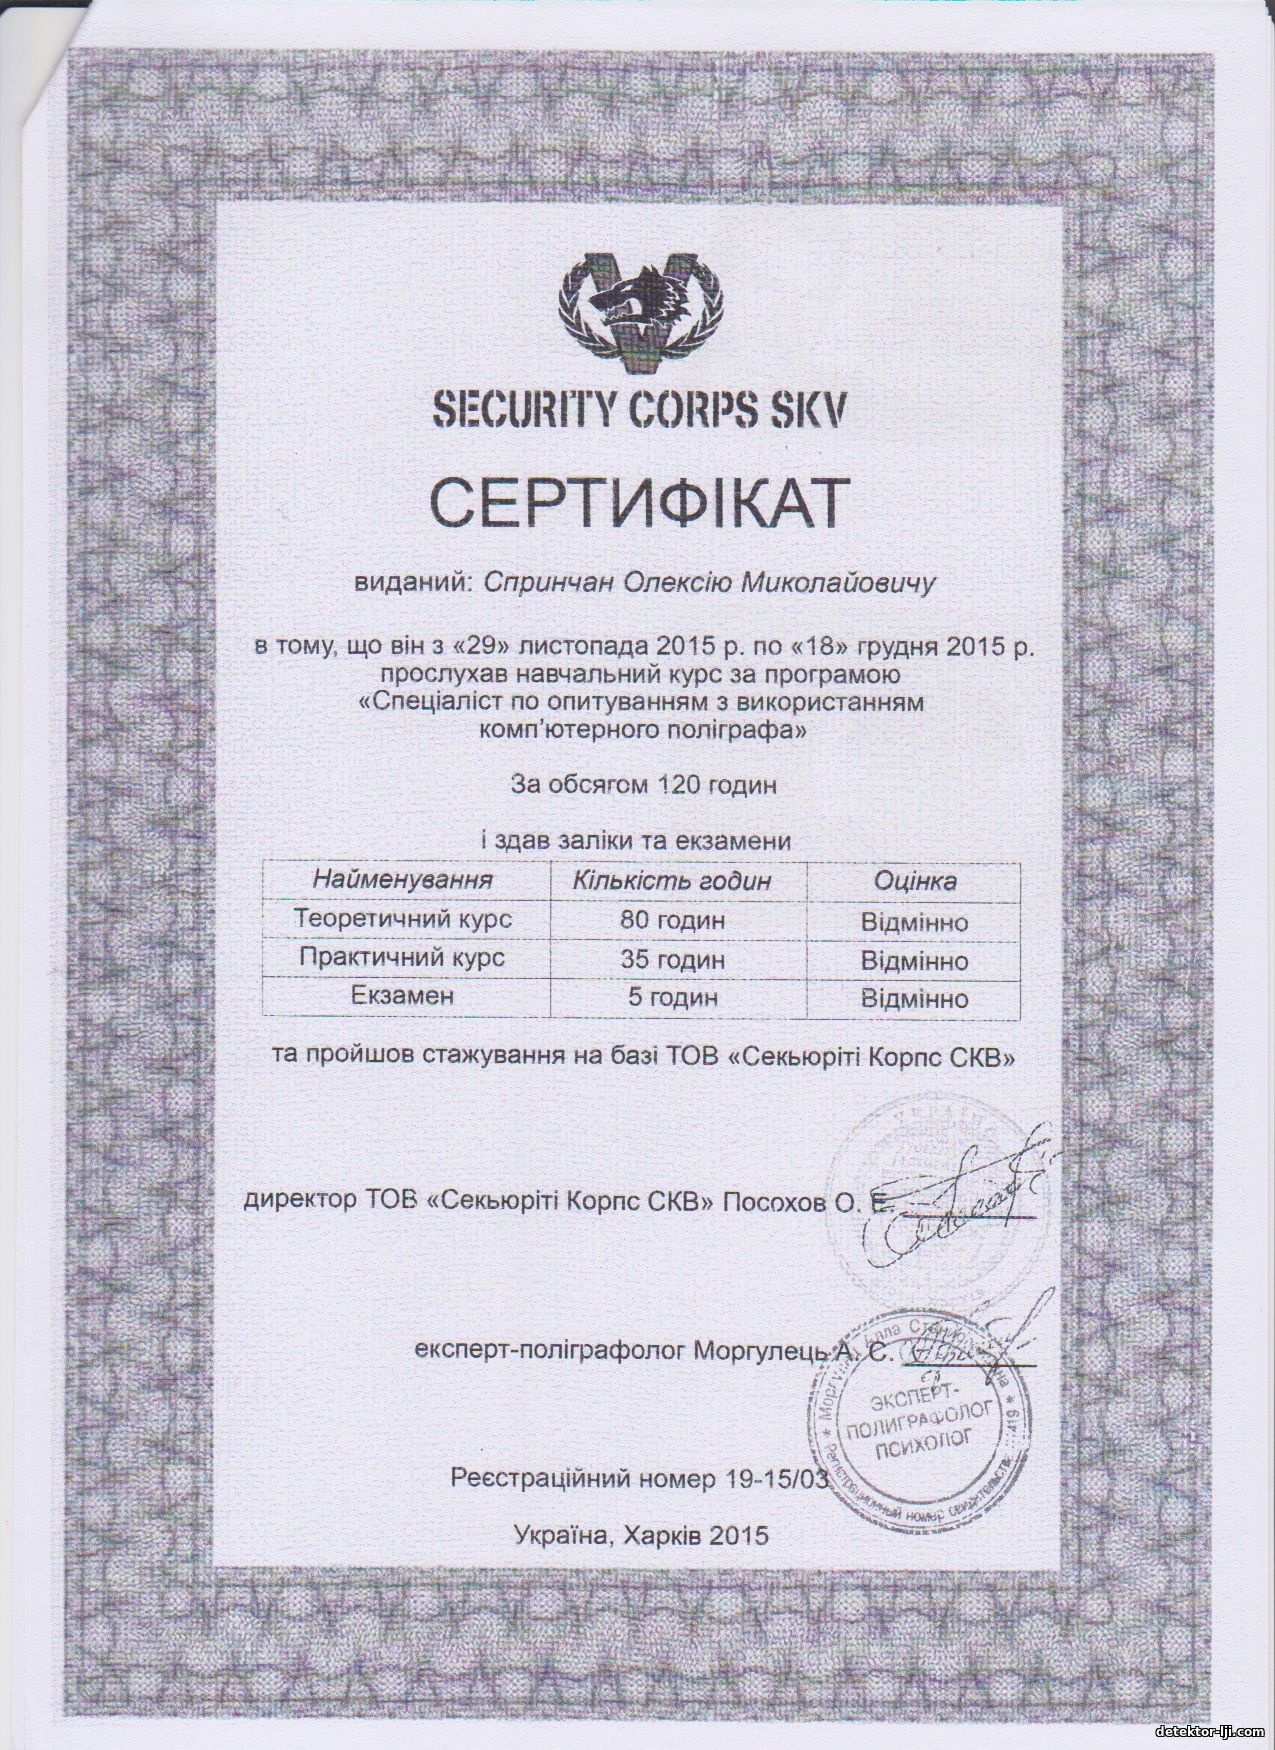 Сертификат "специалист - полиграфолог" 